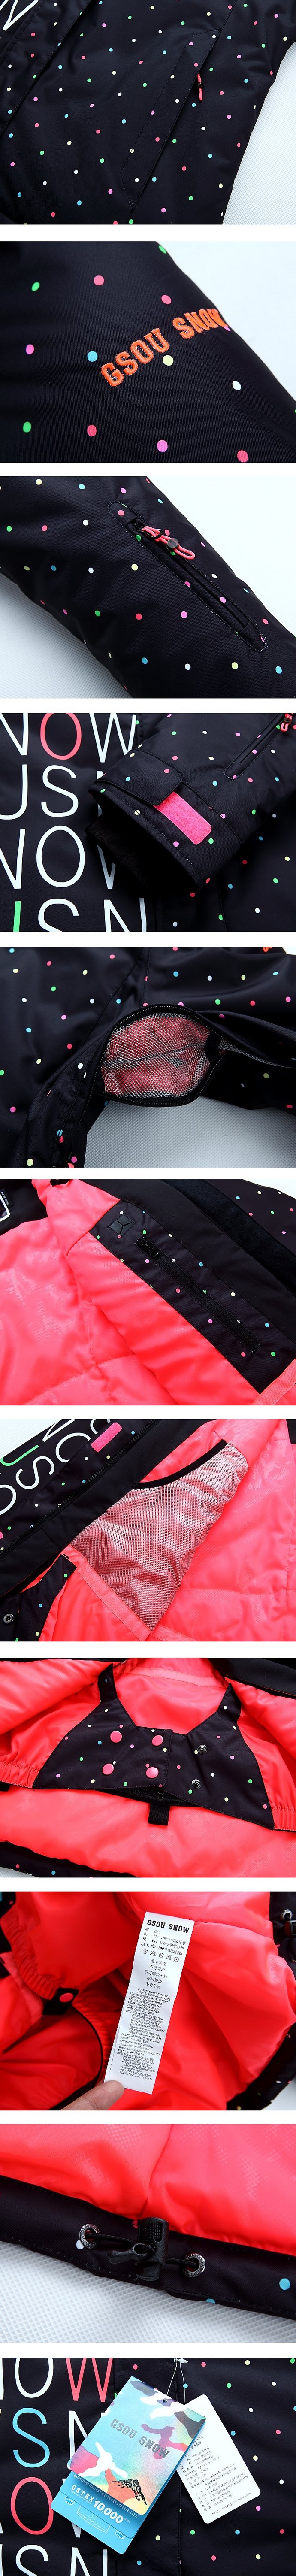 цена дешево Женская зимняя горнолыжная куртка Gsou SNOW, красивый женский сноубордический костюм Gsou SNOW, горнолыжная экипировка, горнолыжная одежда